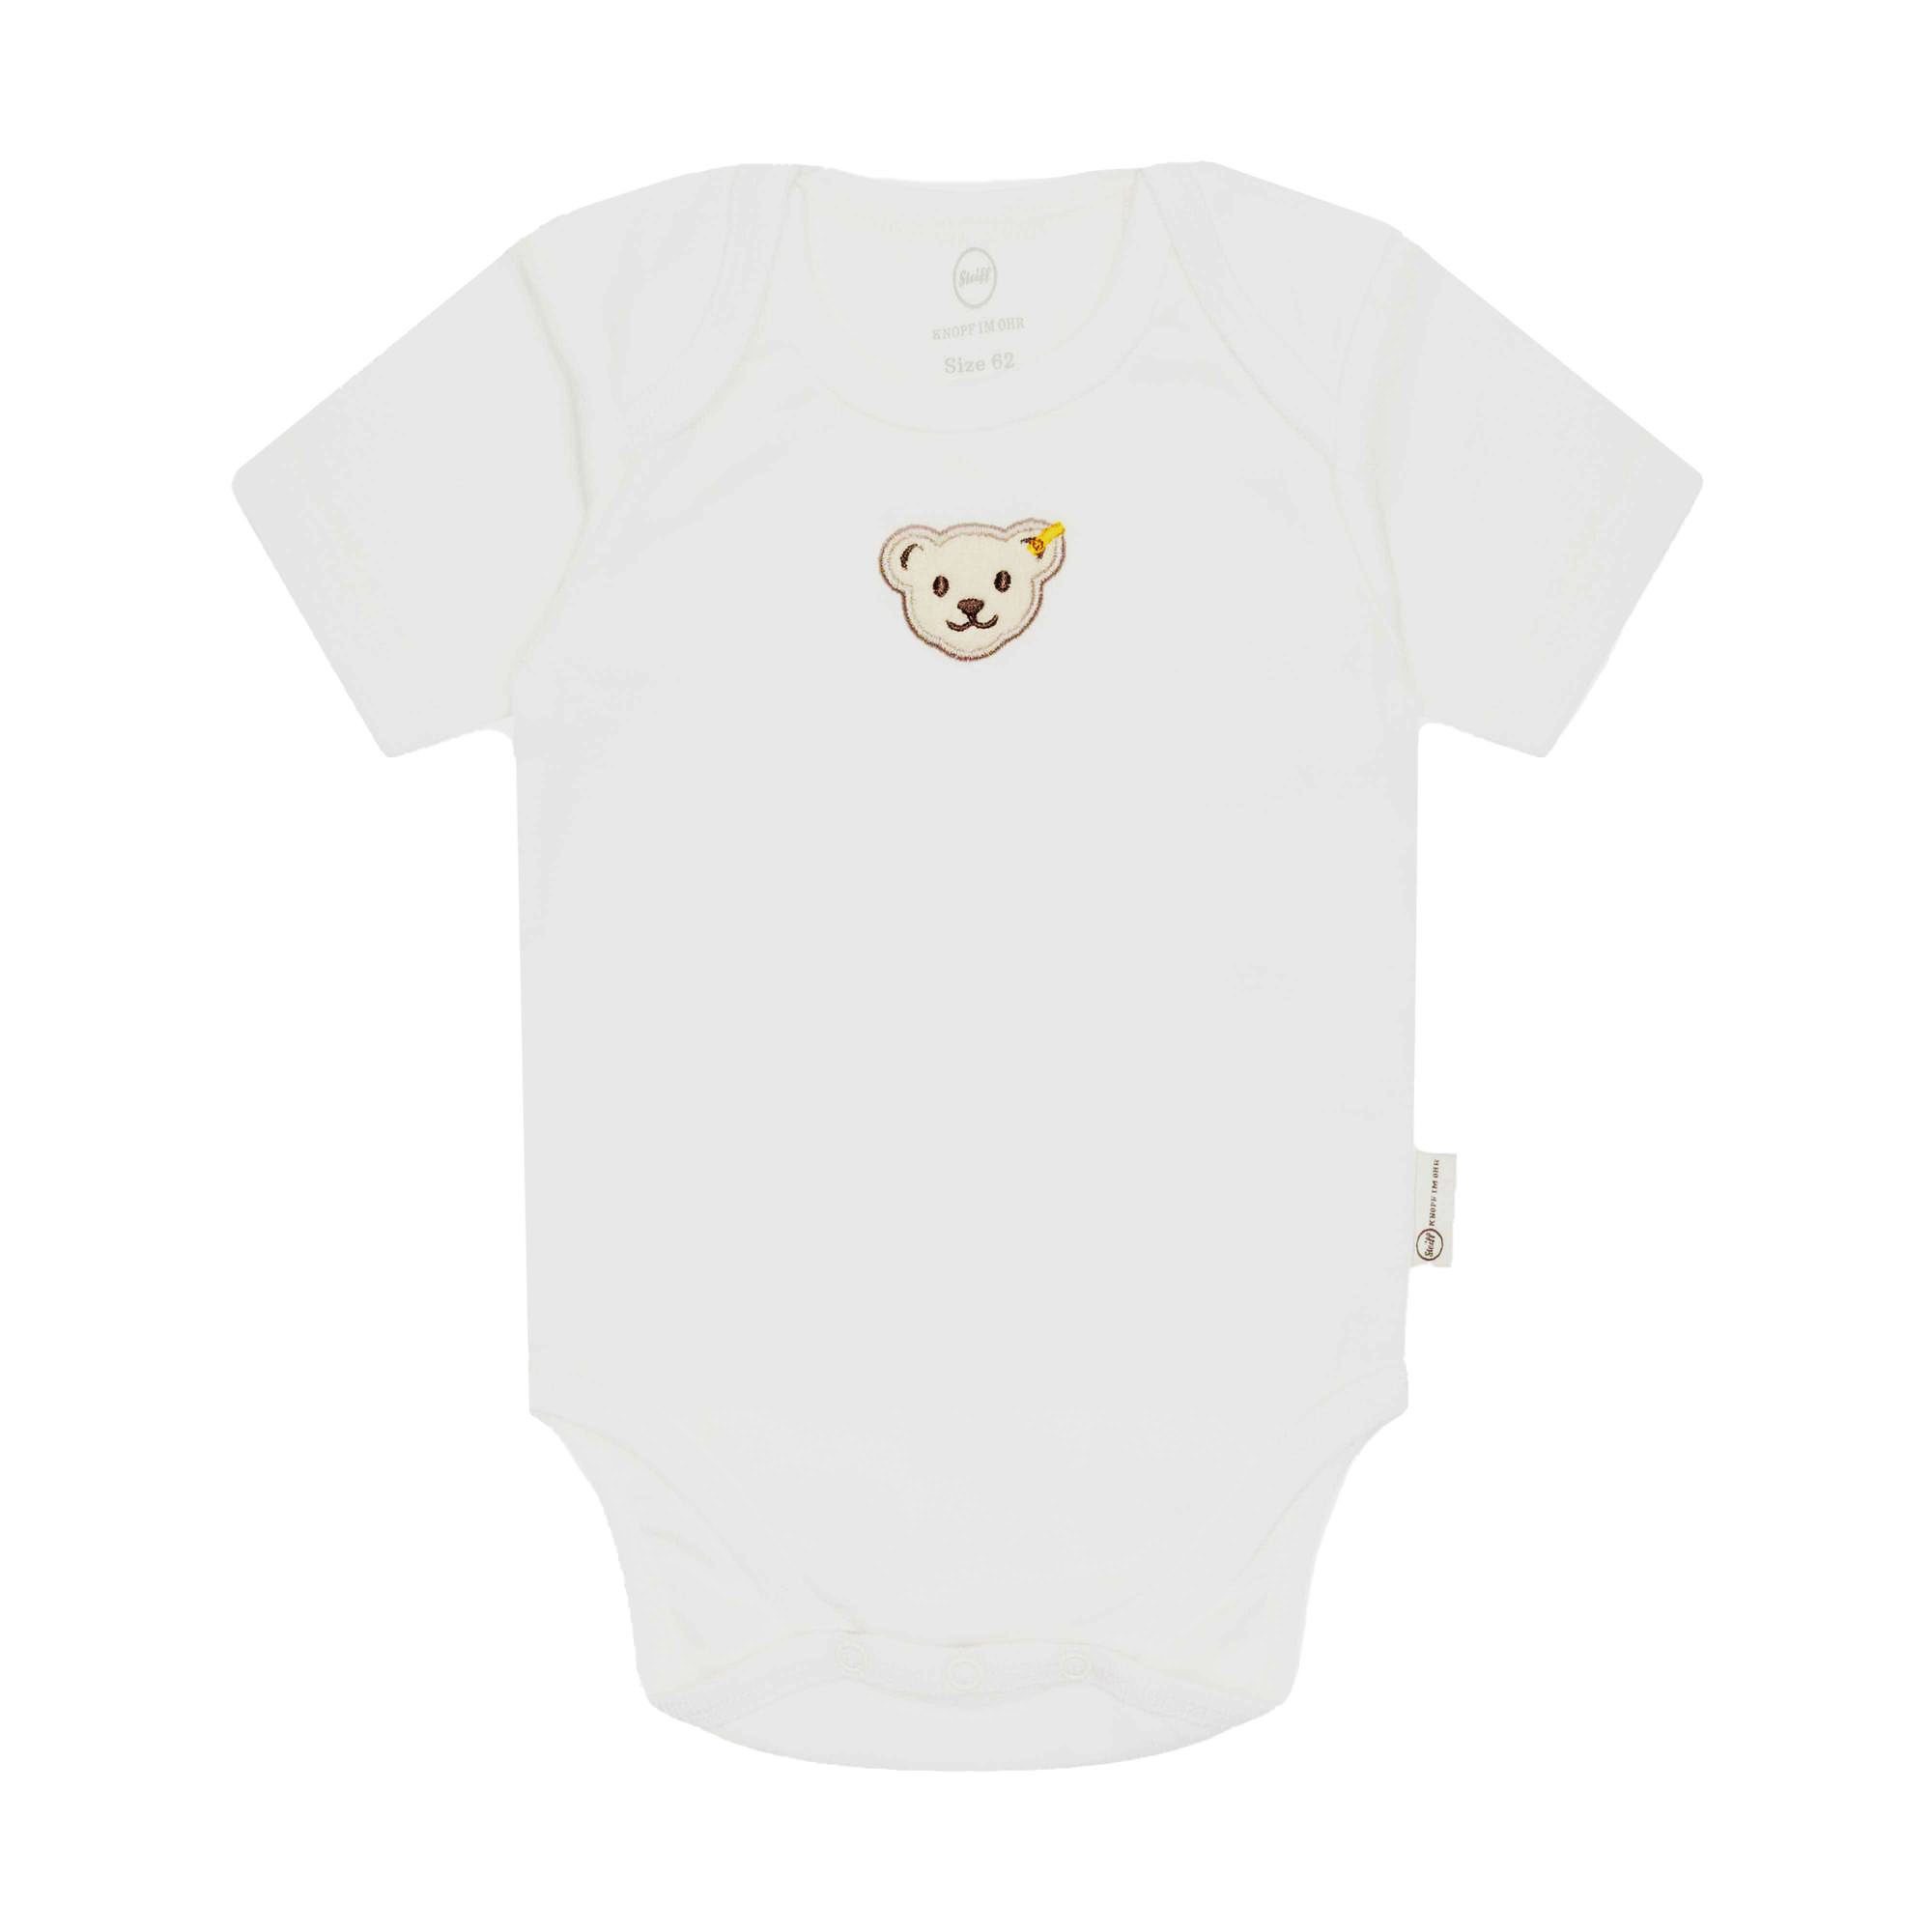 Baumwolle, Weiß Strampler, Logo Baby - Steiff Strampler Body Bär,